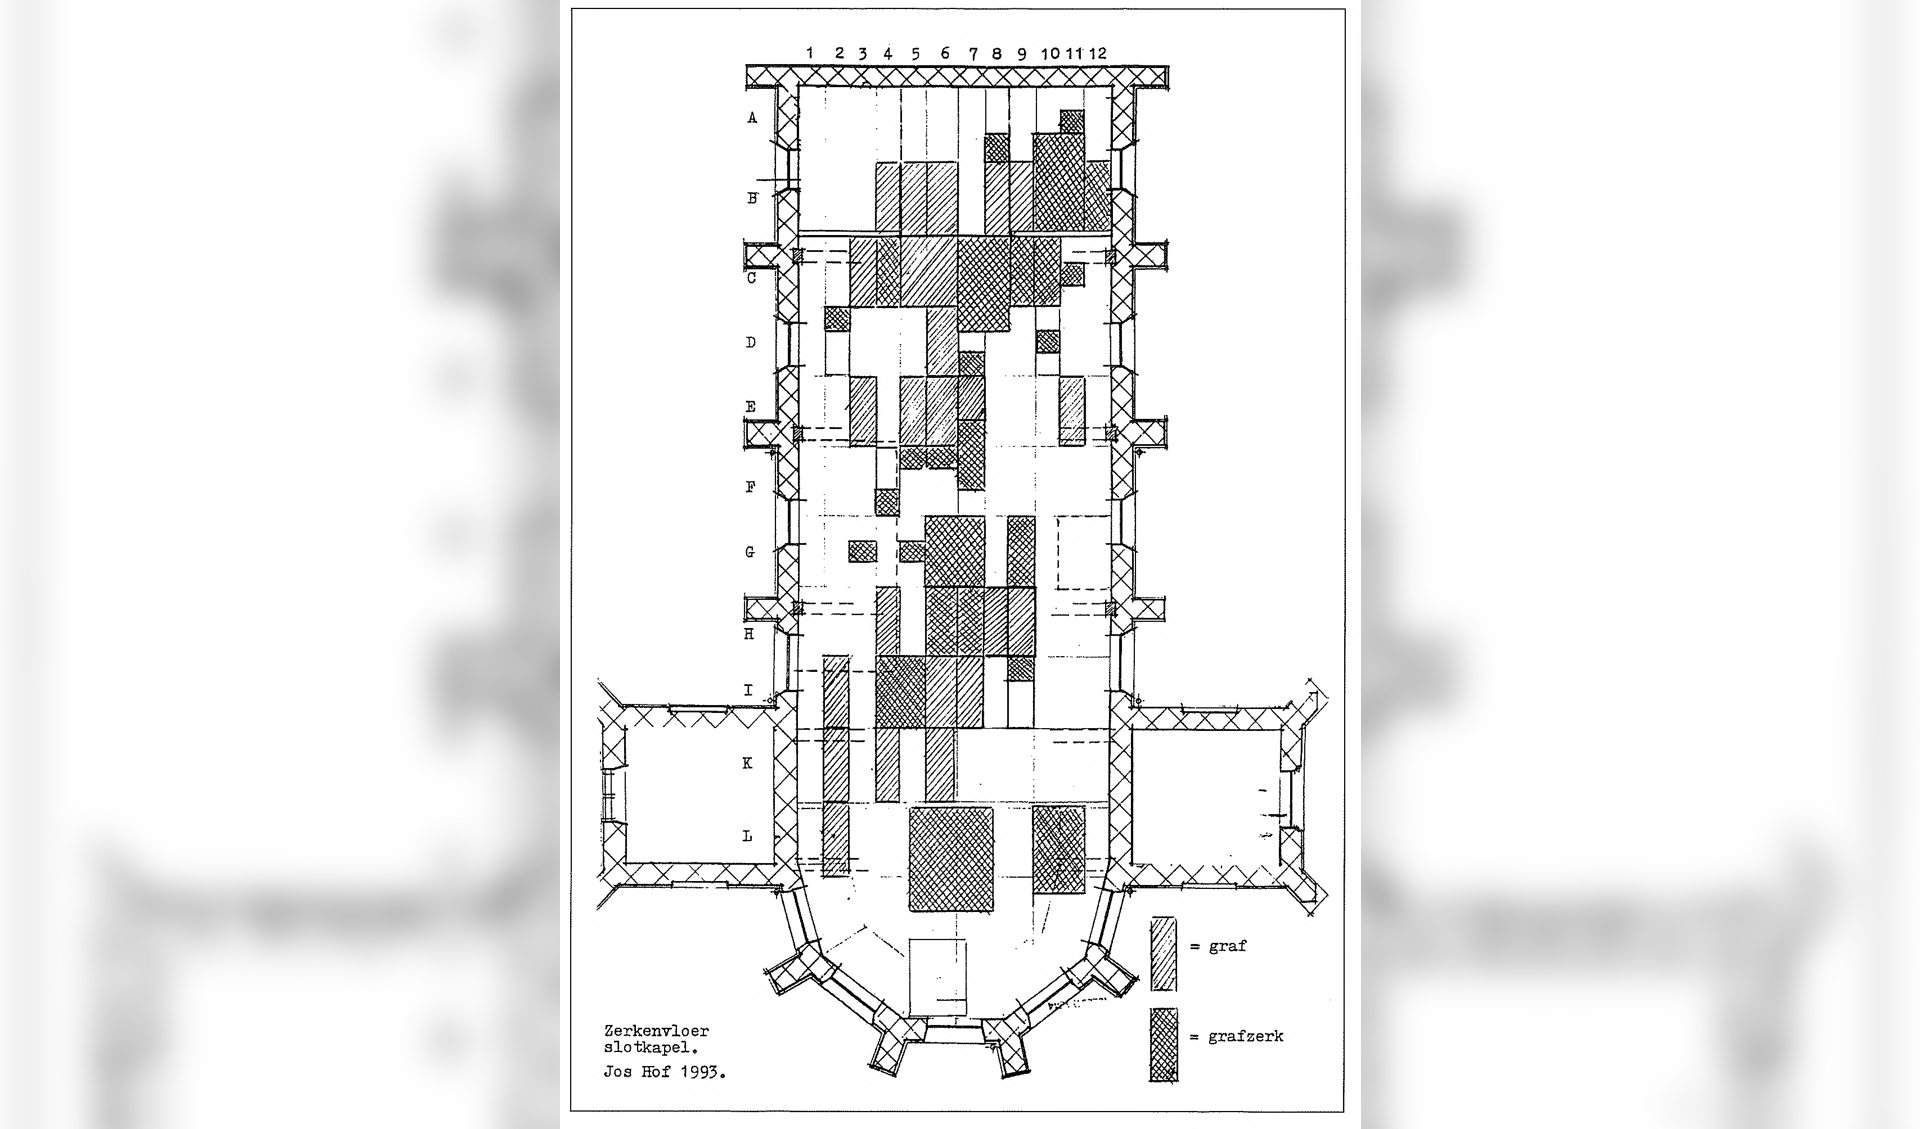 Plattegrond van de vloer van de Slotkapel, zoals weergegeven in Jos Hof, Graven en zerken in de Slotkapel, Egmond aan den Hoef 1994